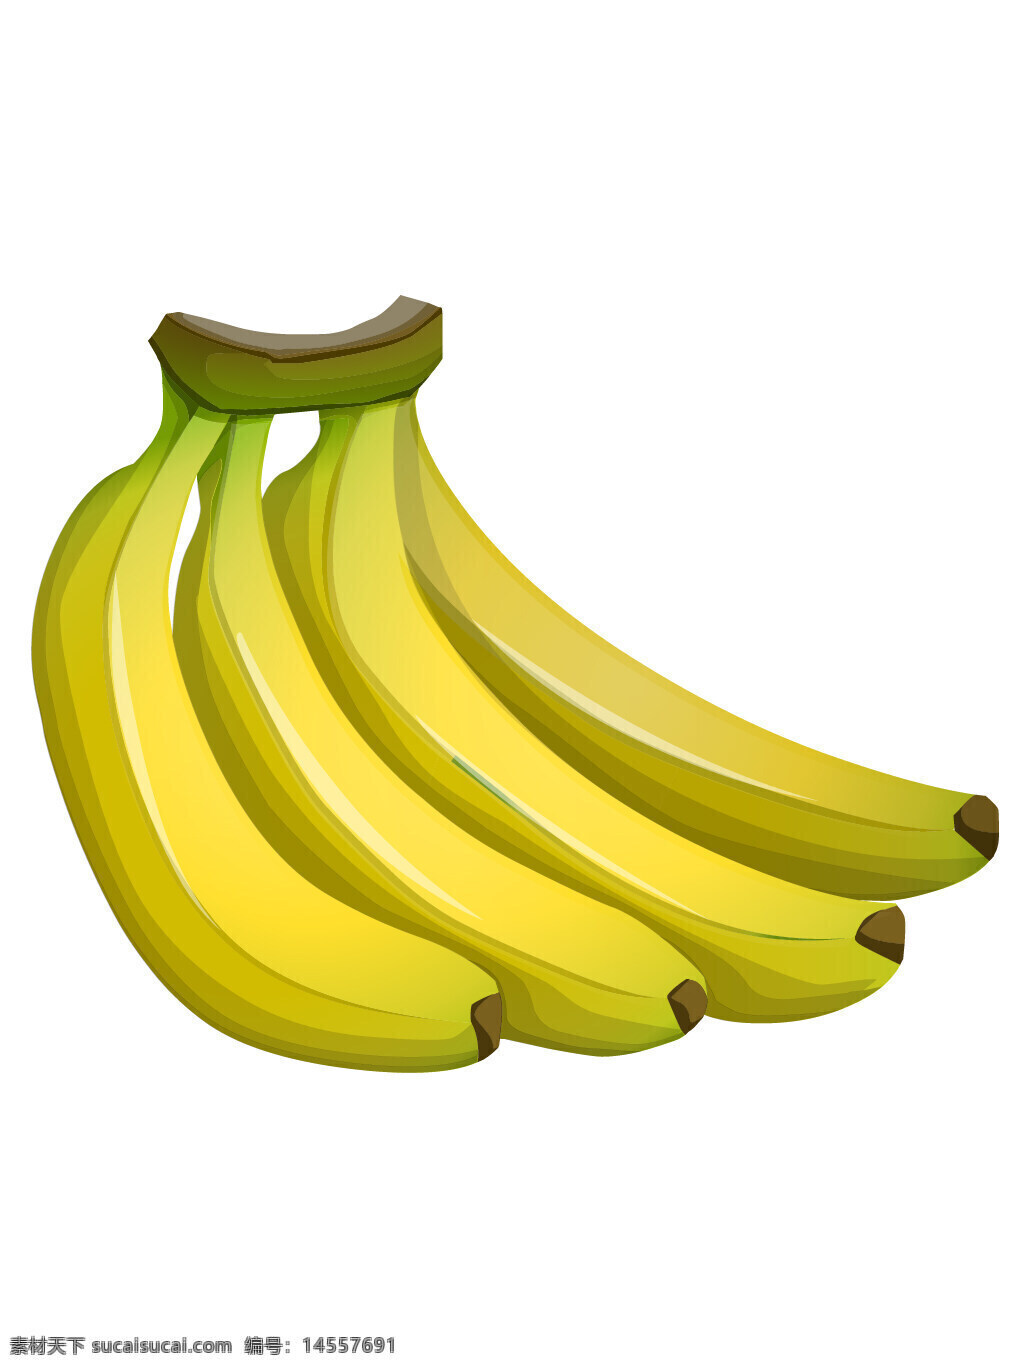 香蕉 芭蕉 水果 瓜果 食物 手绘水果 矢量水果 手绘素材 矢量素材 新鲜水果 植物